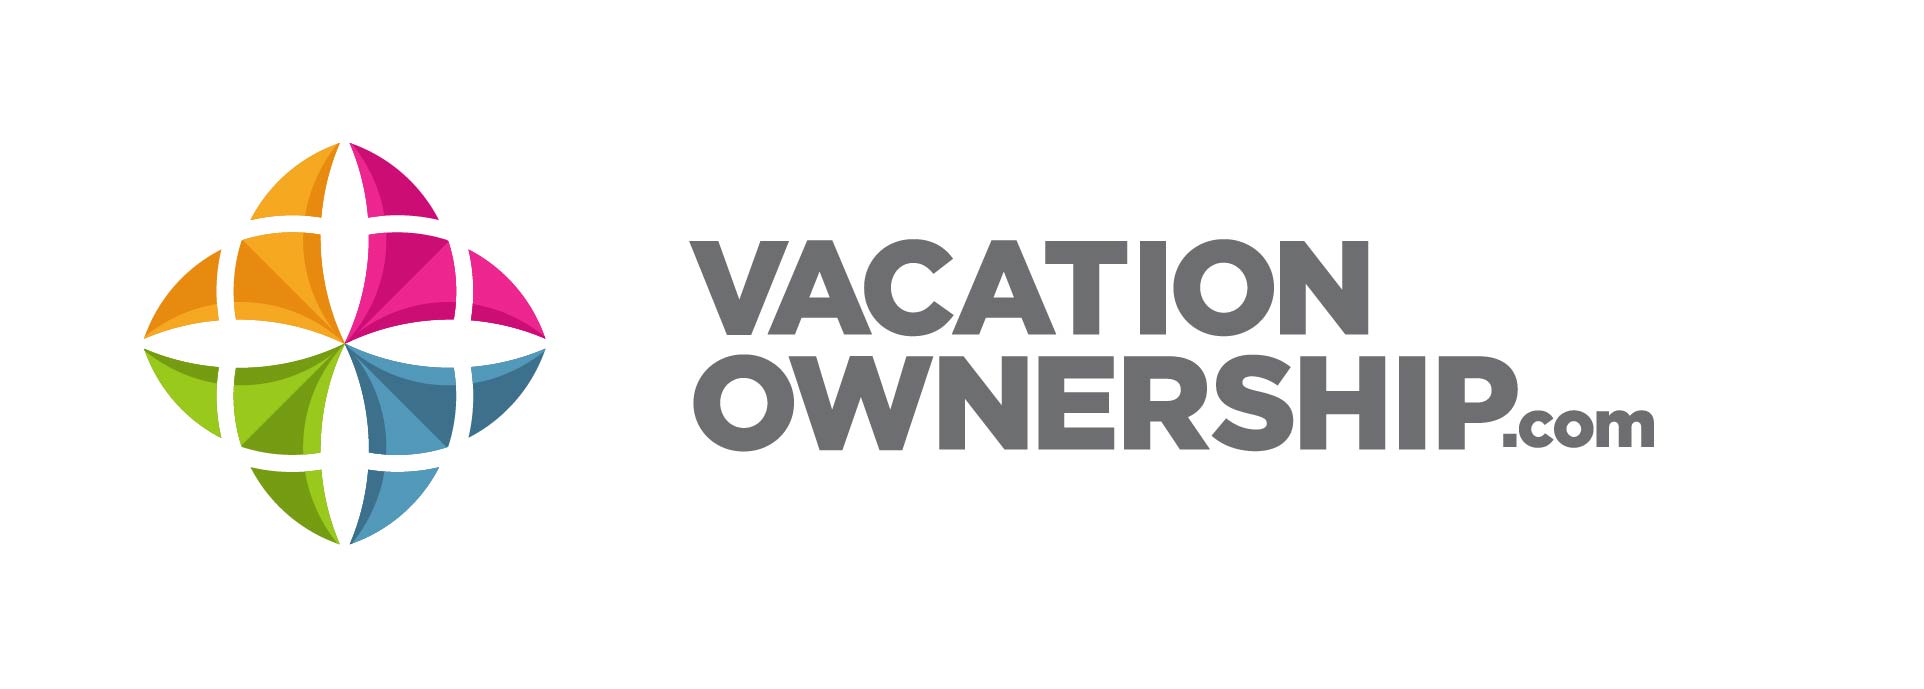 VacationOwnership.com Becomes a Contributing Sponsor to GNEX 2013